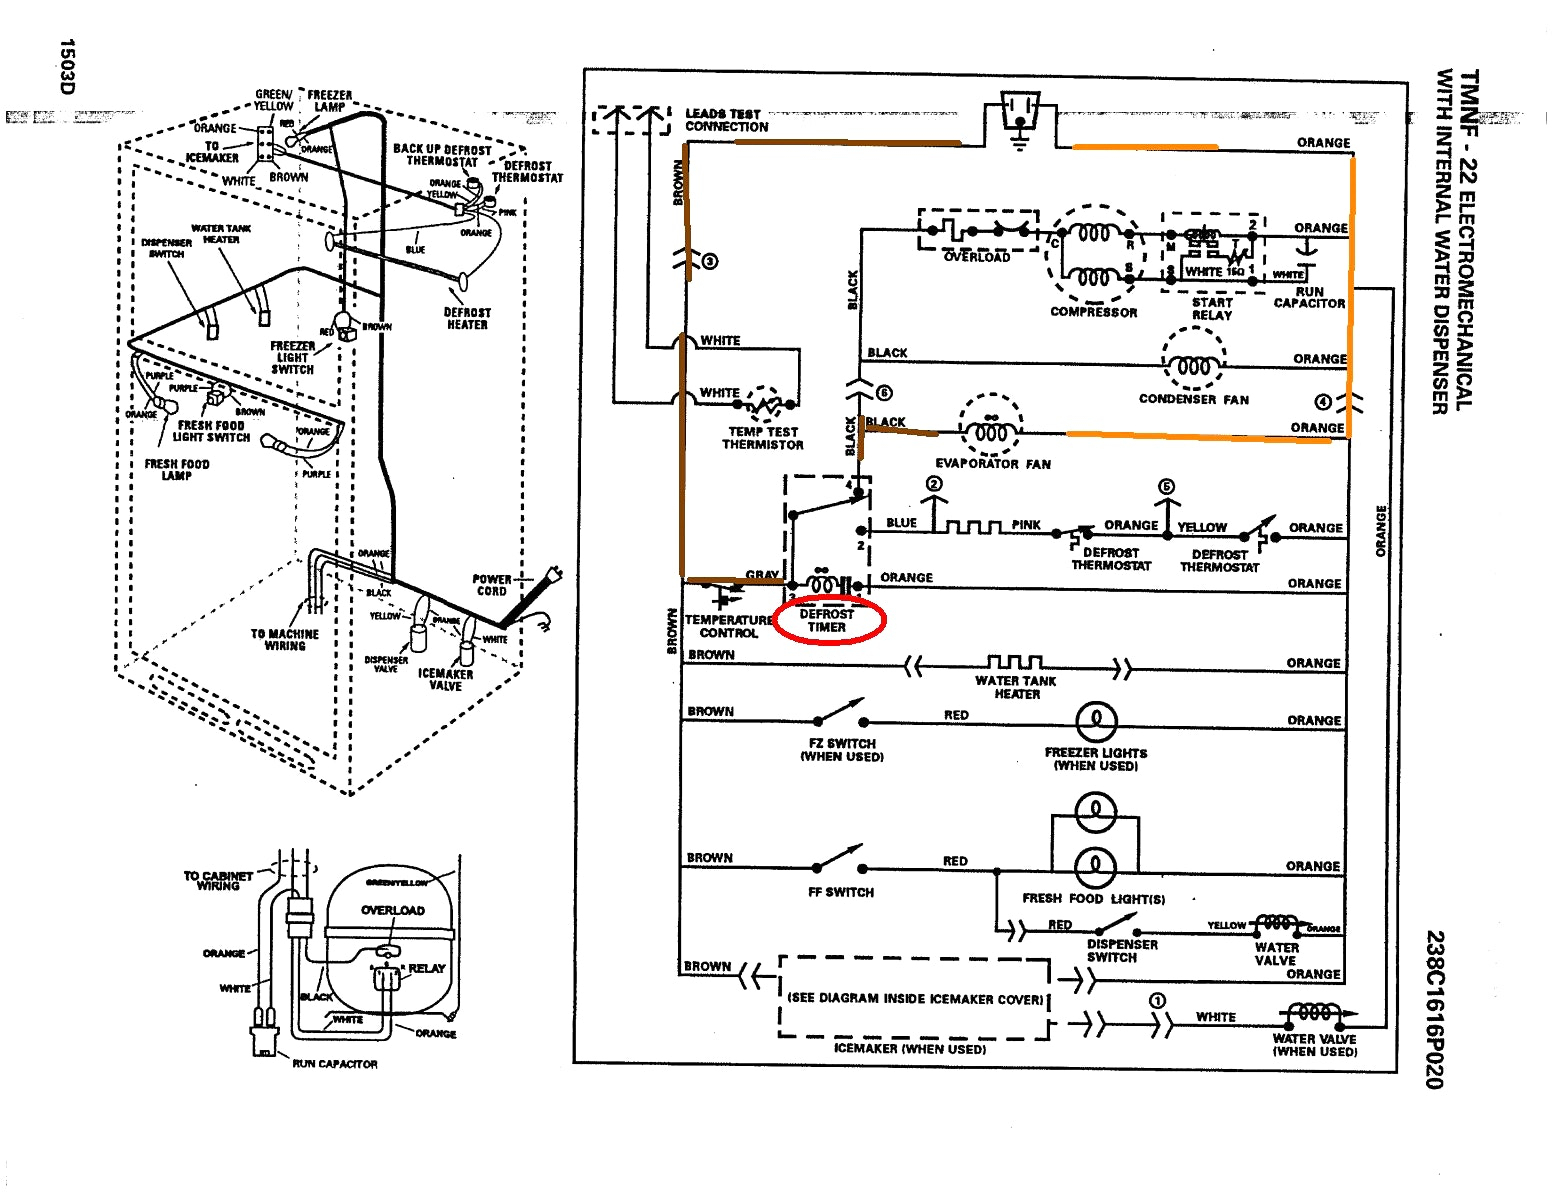 1948 Ge Refrigerator Schematic - Today Wiring Diagram - Ge Dryer Wiring Diagram